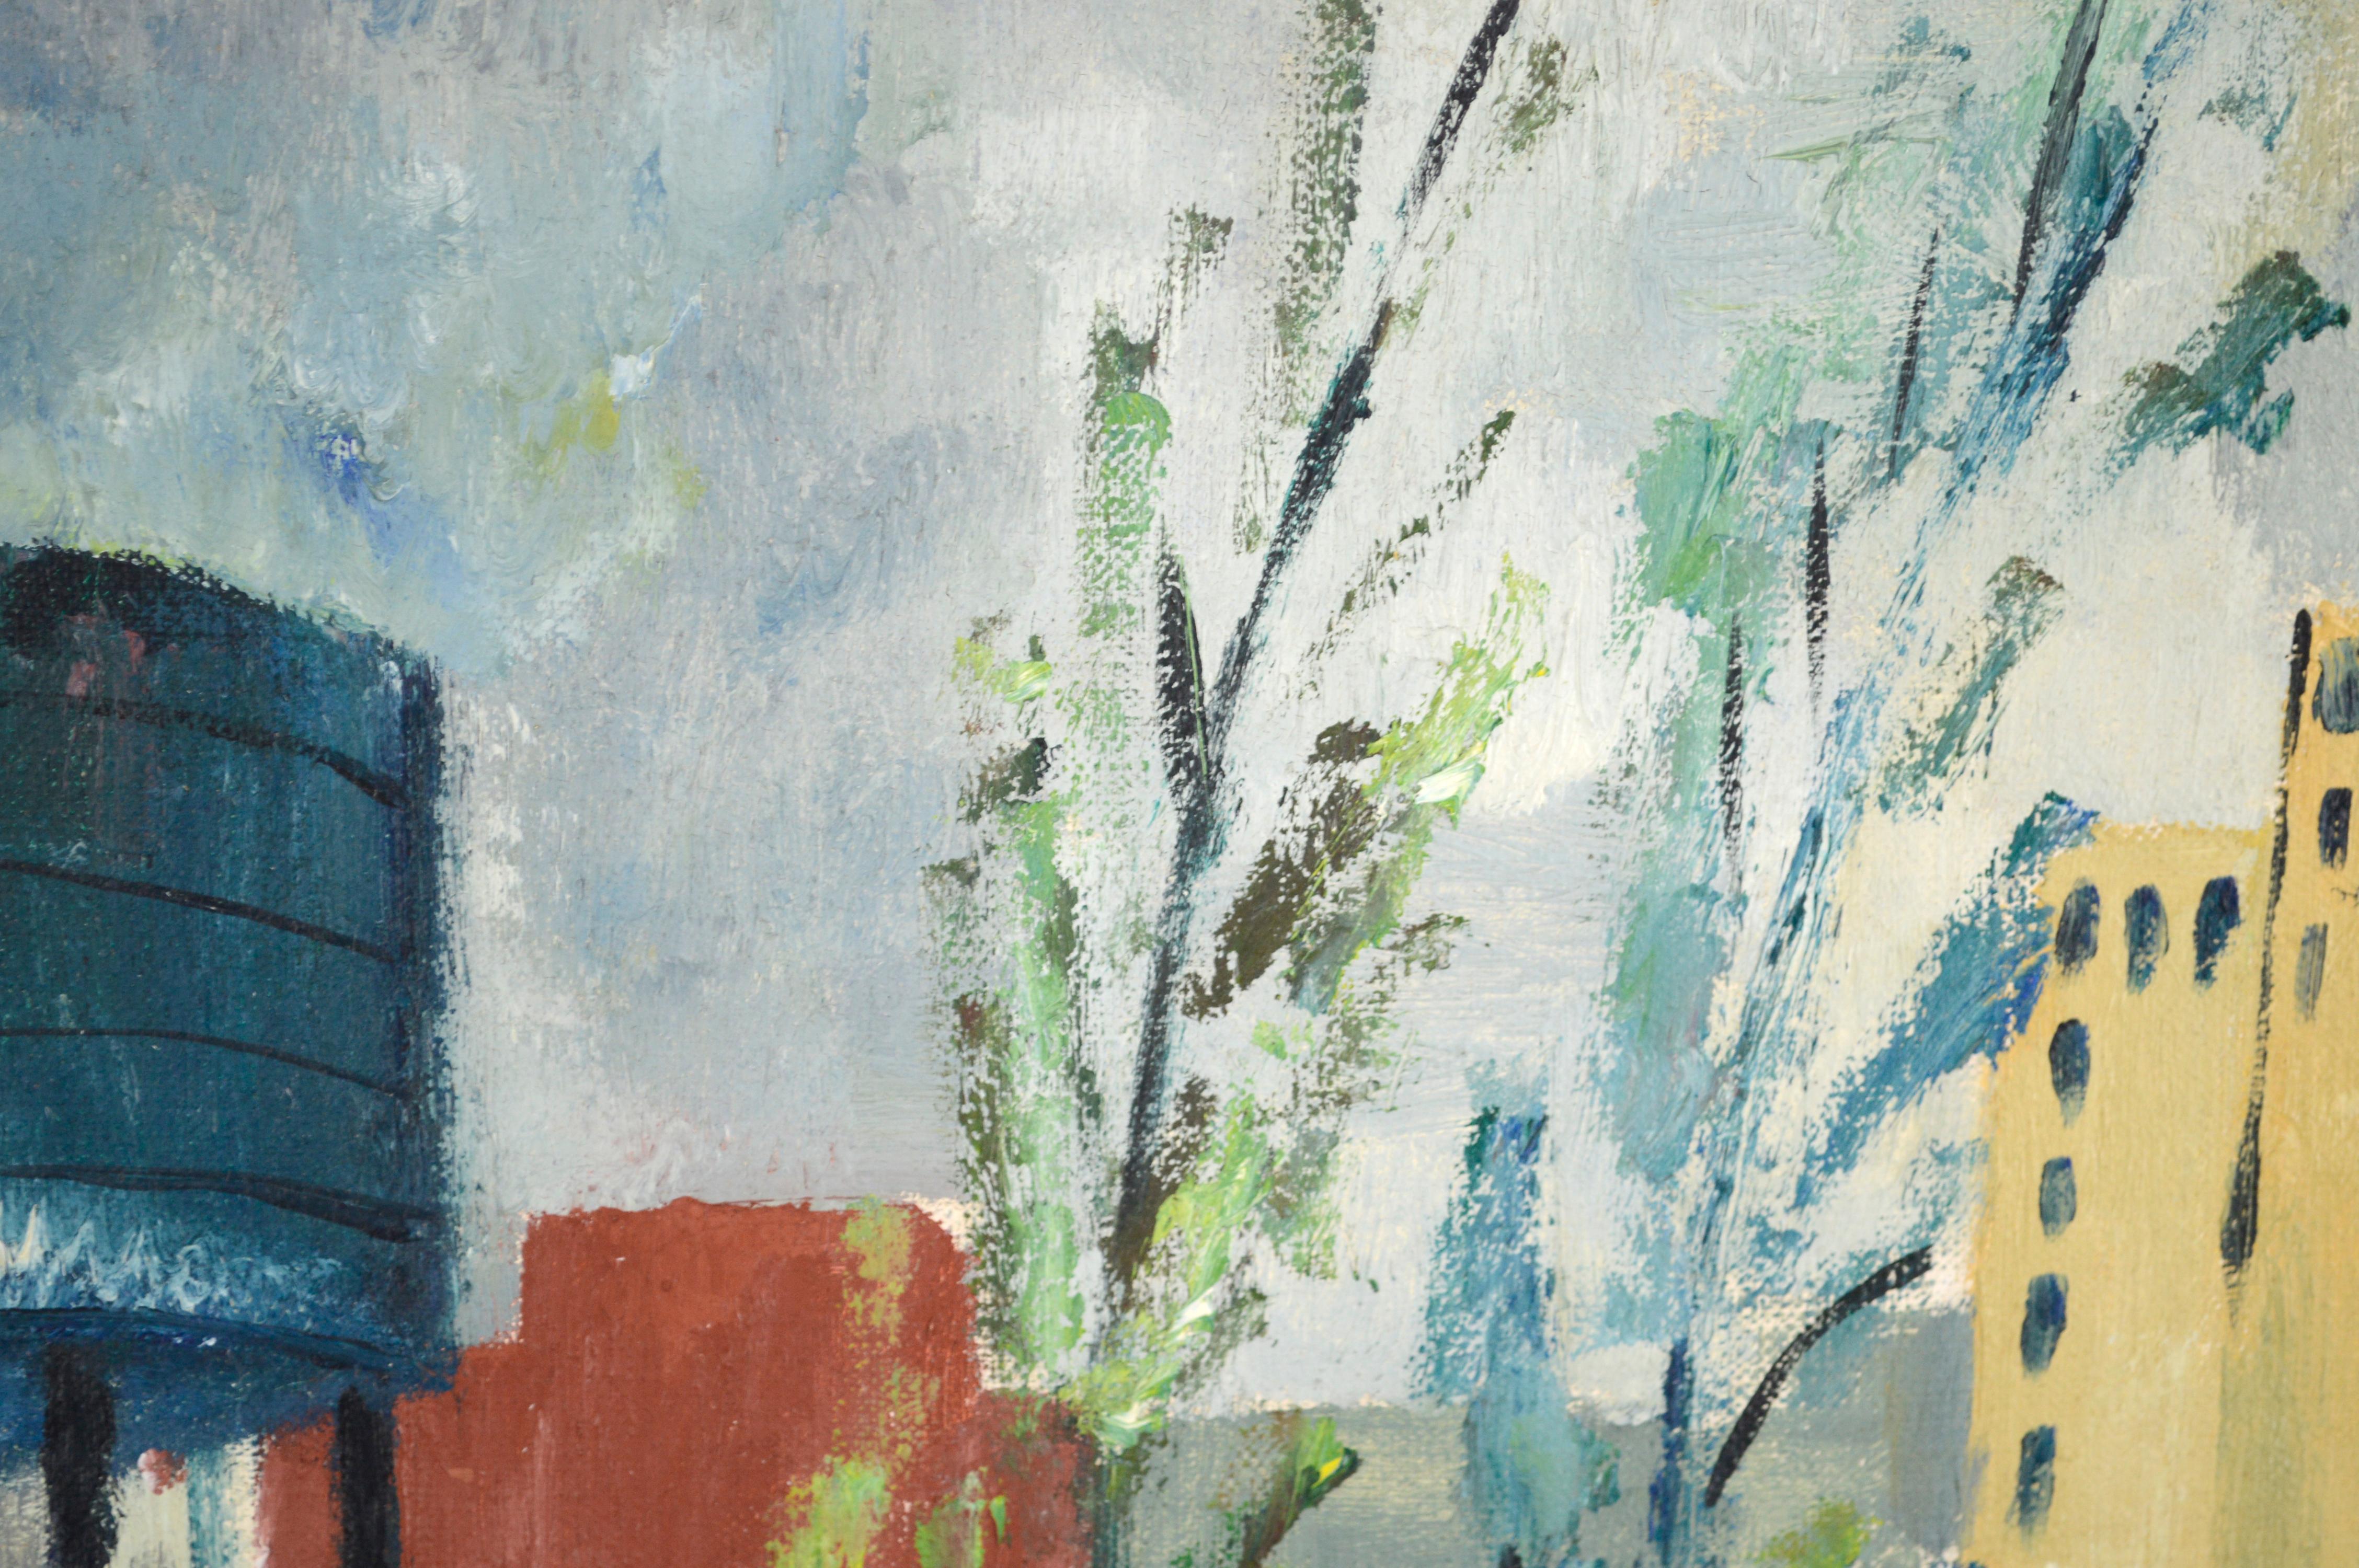 Paysage industriel avec arbres à l'huile sur lin

Paysage industriel audacieux de Doris Lyons Hoover (Américaine, 1927-2014). Un grand bâtiment rouge avec un réservoir d'eau et des silos au-dessus d'une route bordée d'arbres domine le paysage. Le